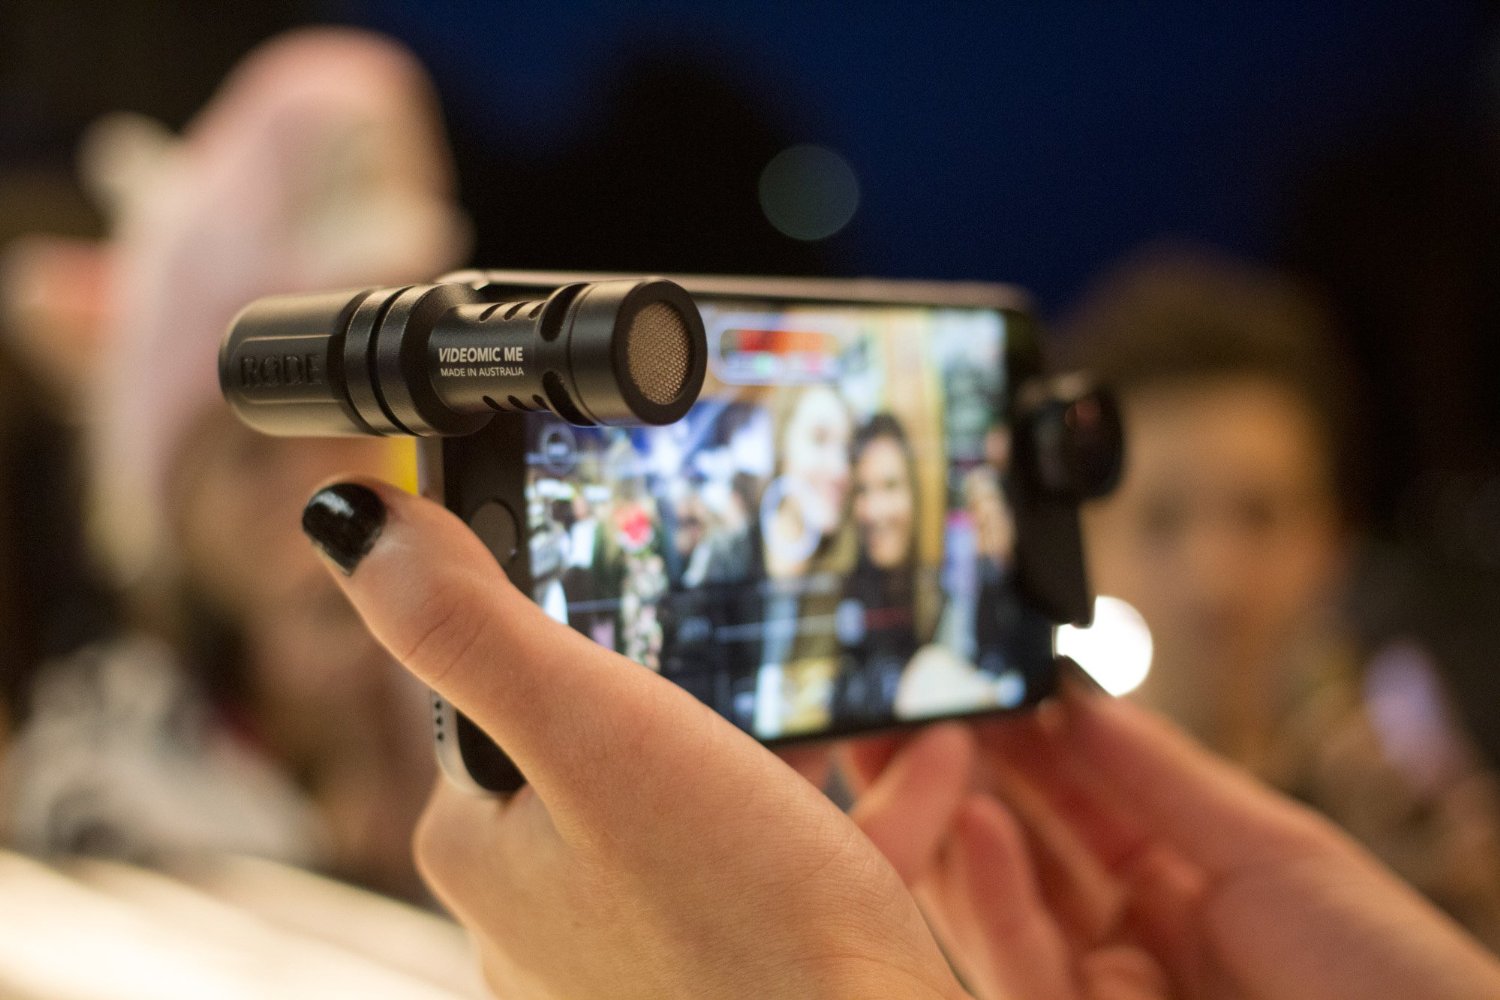 I migliori microfoni per iPhone e iPad per vlogger, videomaker, r e  giornalisti 